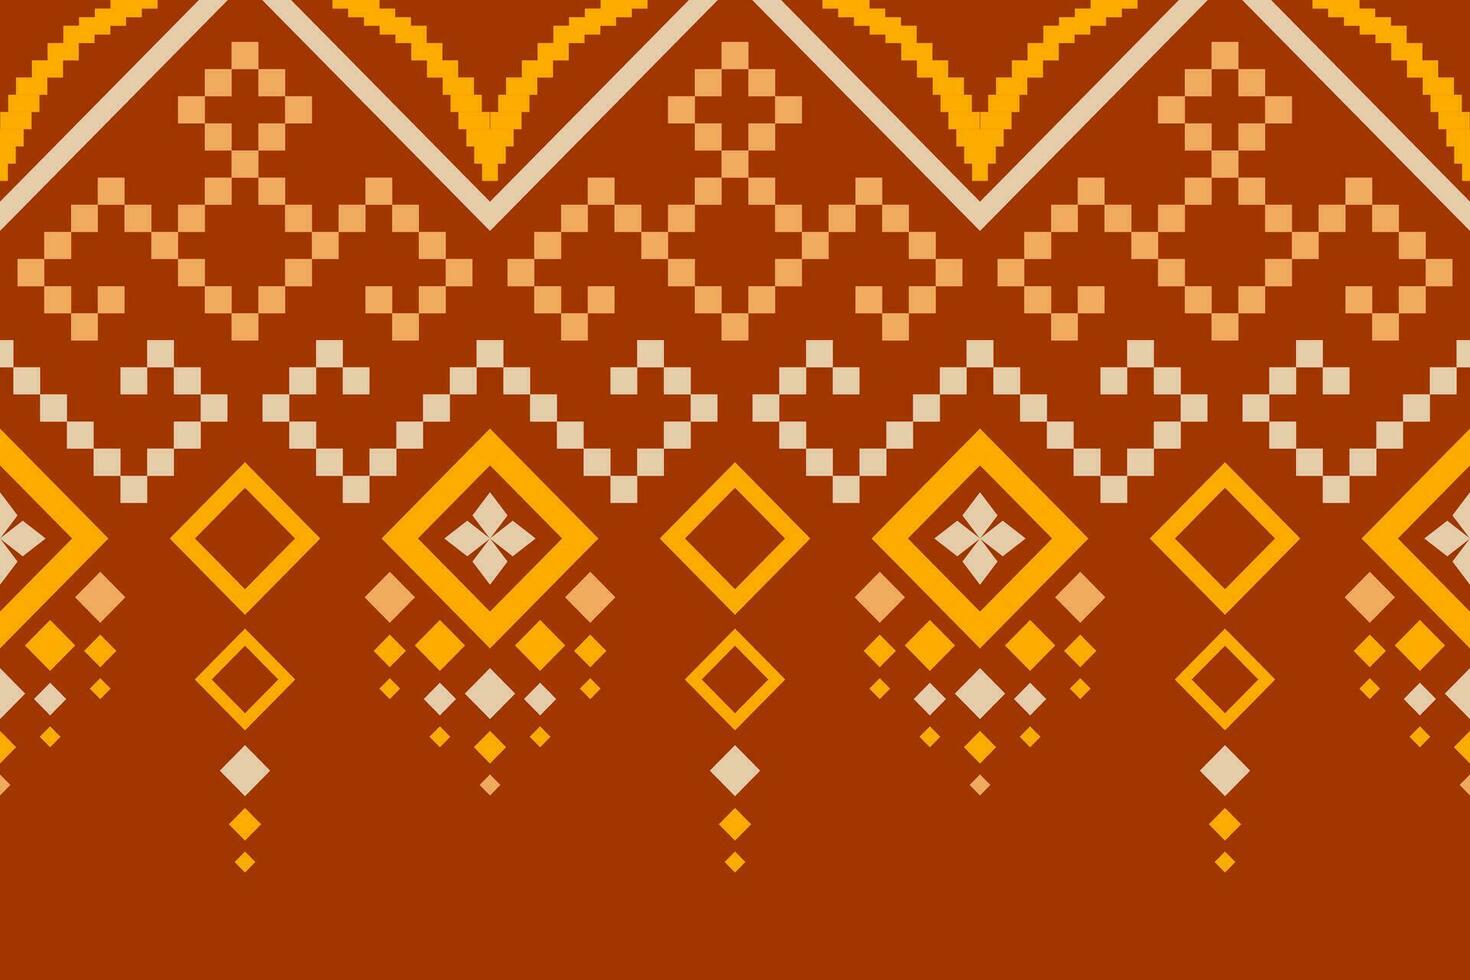 Orange Jahrgänge Kreuz Stich traditionell ethnisch Muster Paisley Blume Ikat Hintergrund abstrakt aztekisch afrikanisch indonesisch indisch nahtlos Muster zum Stoff drucken Stoff Kleid Teppich Vorhänge und Sarong vektor